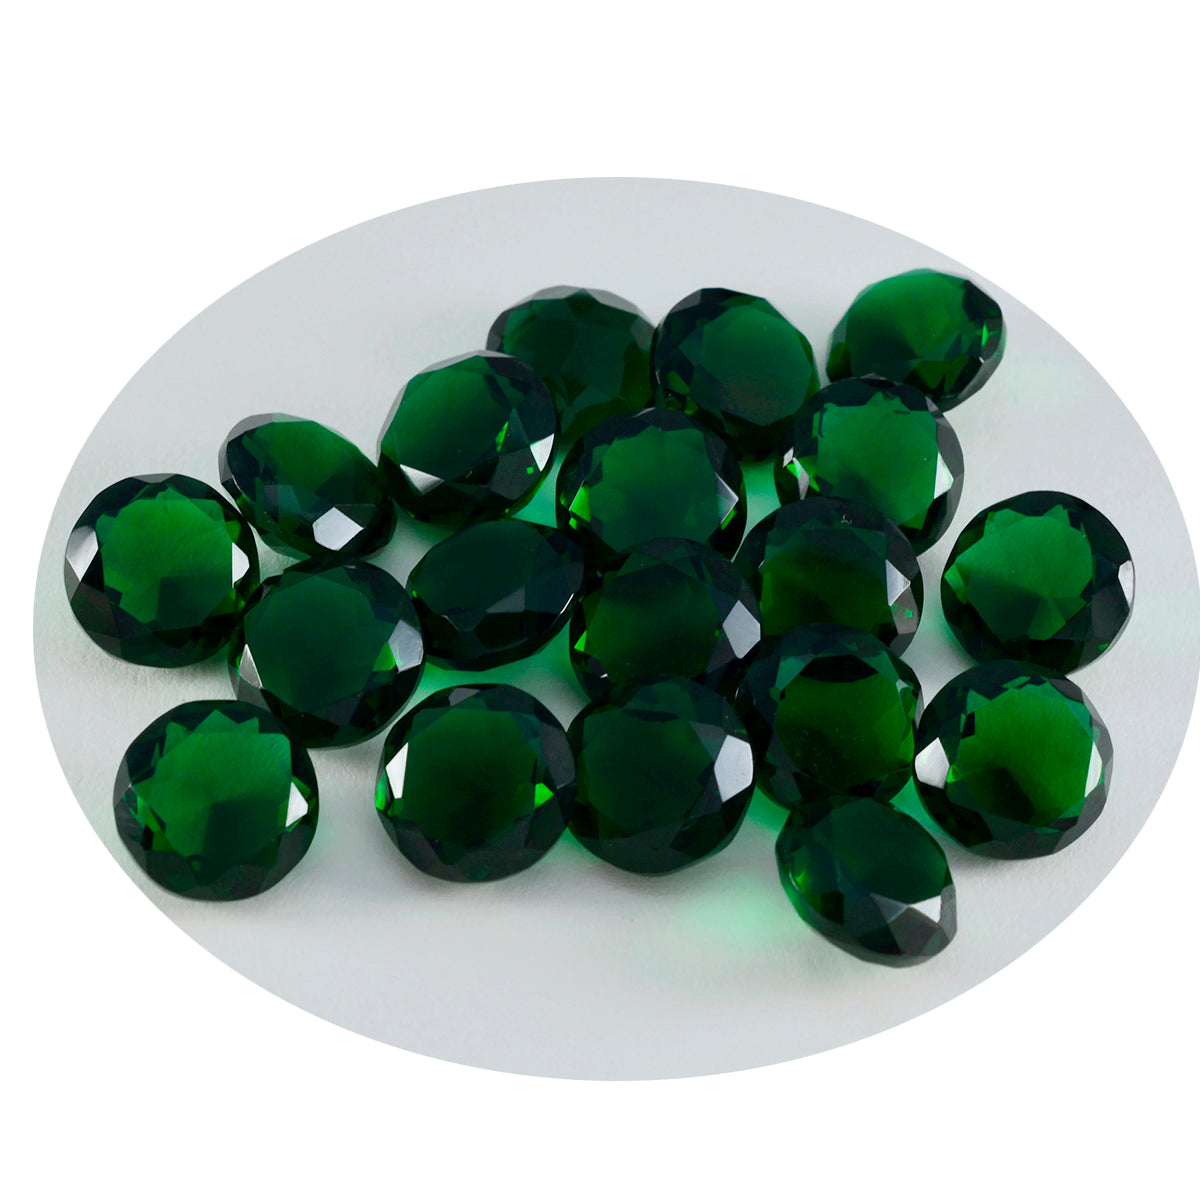 Riyogems 1 pieza verde esmeralda CZ facetada 0.276 x 0.276 in forma redonda piedra preciosa de calidad AA